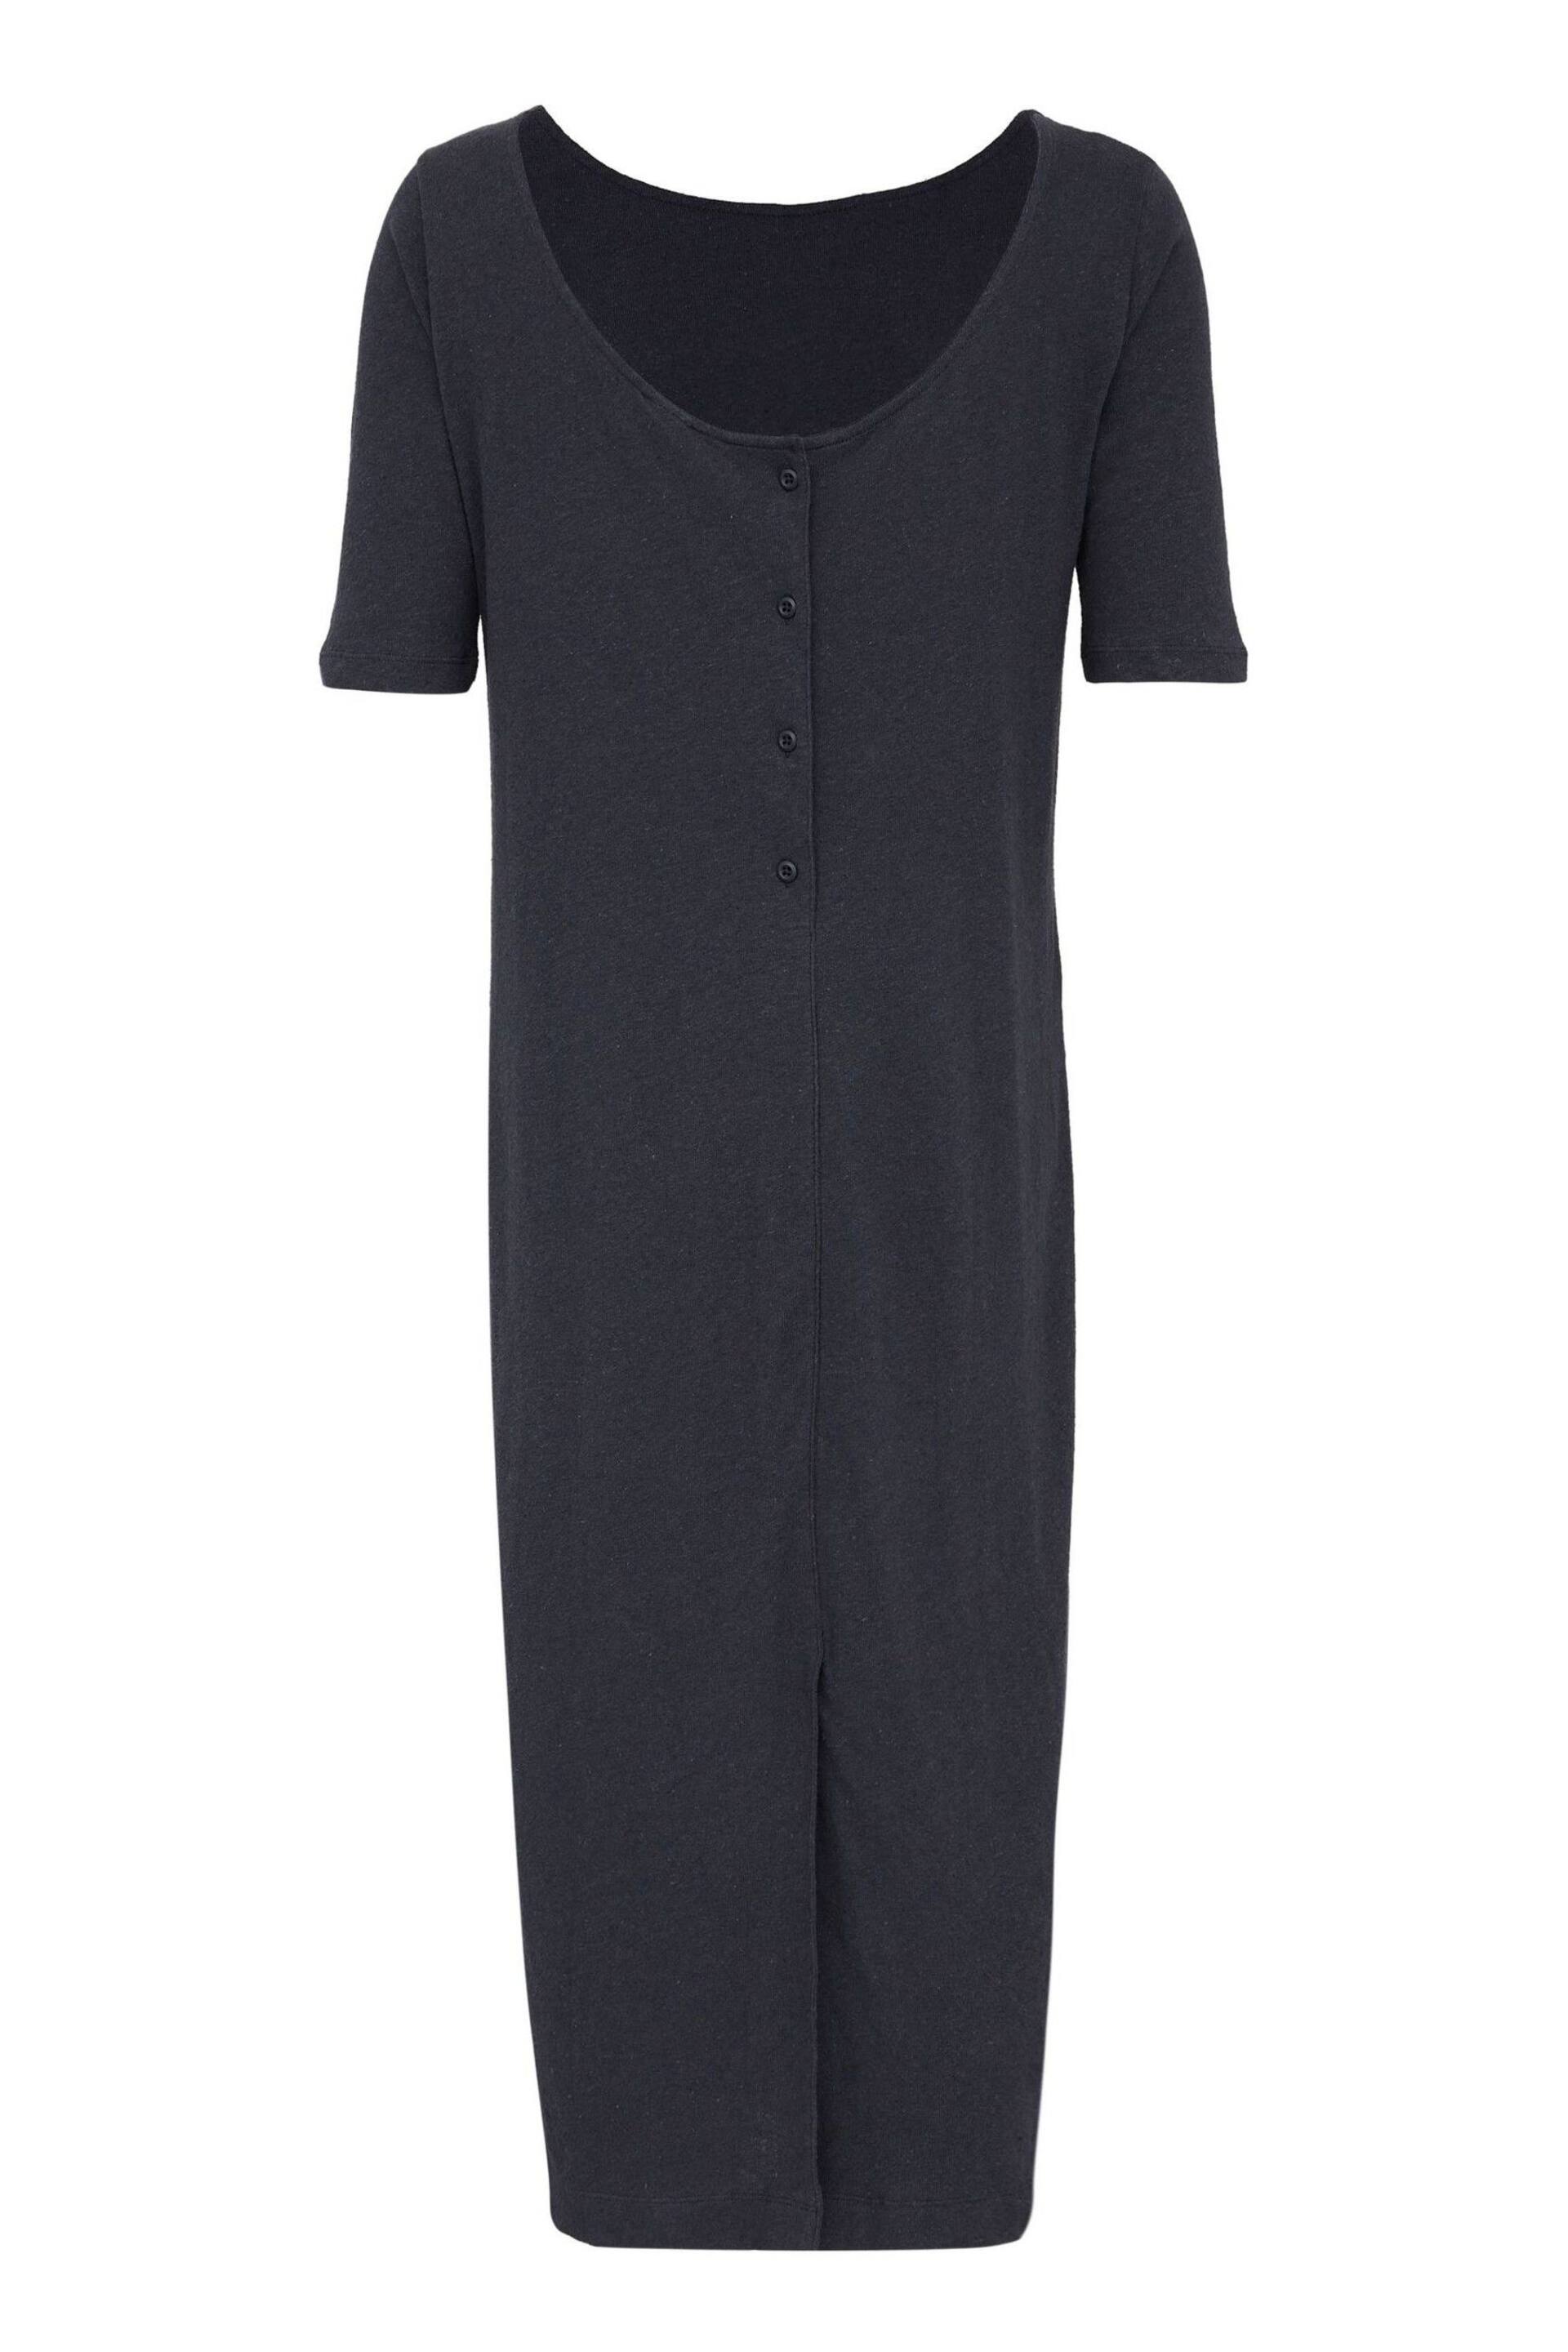 Celtic & Co. Navy Blue Linen/Cotton Button Back Dress - Image 5 of 6